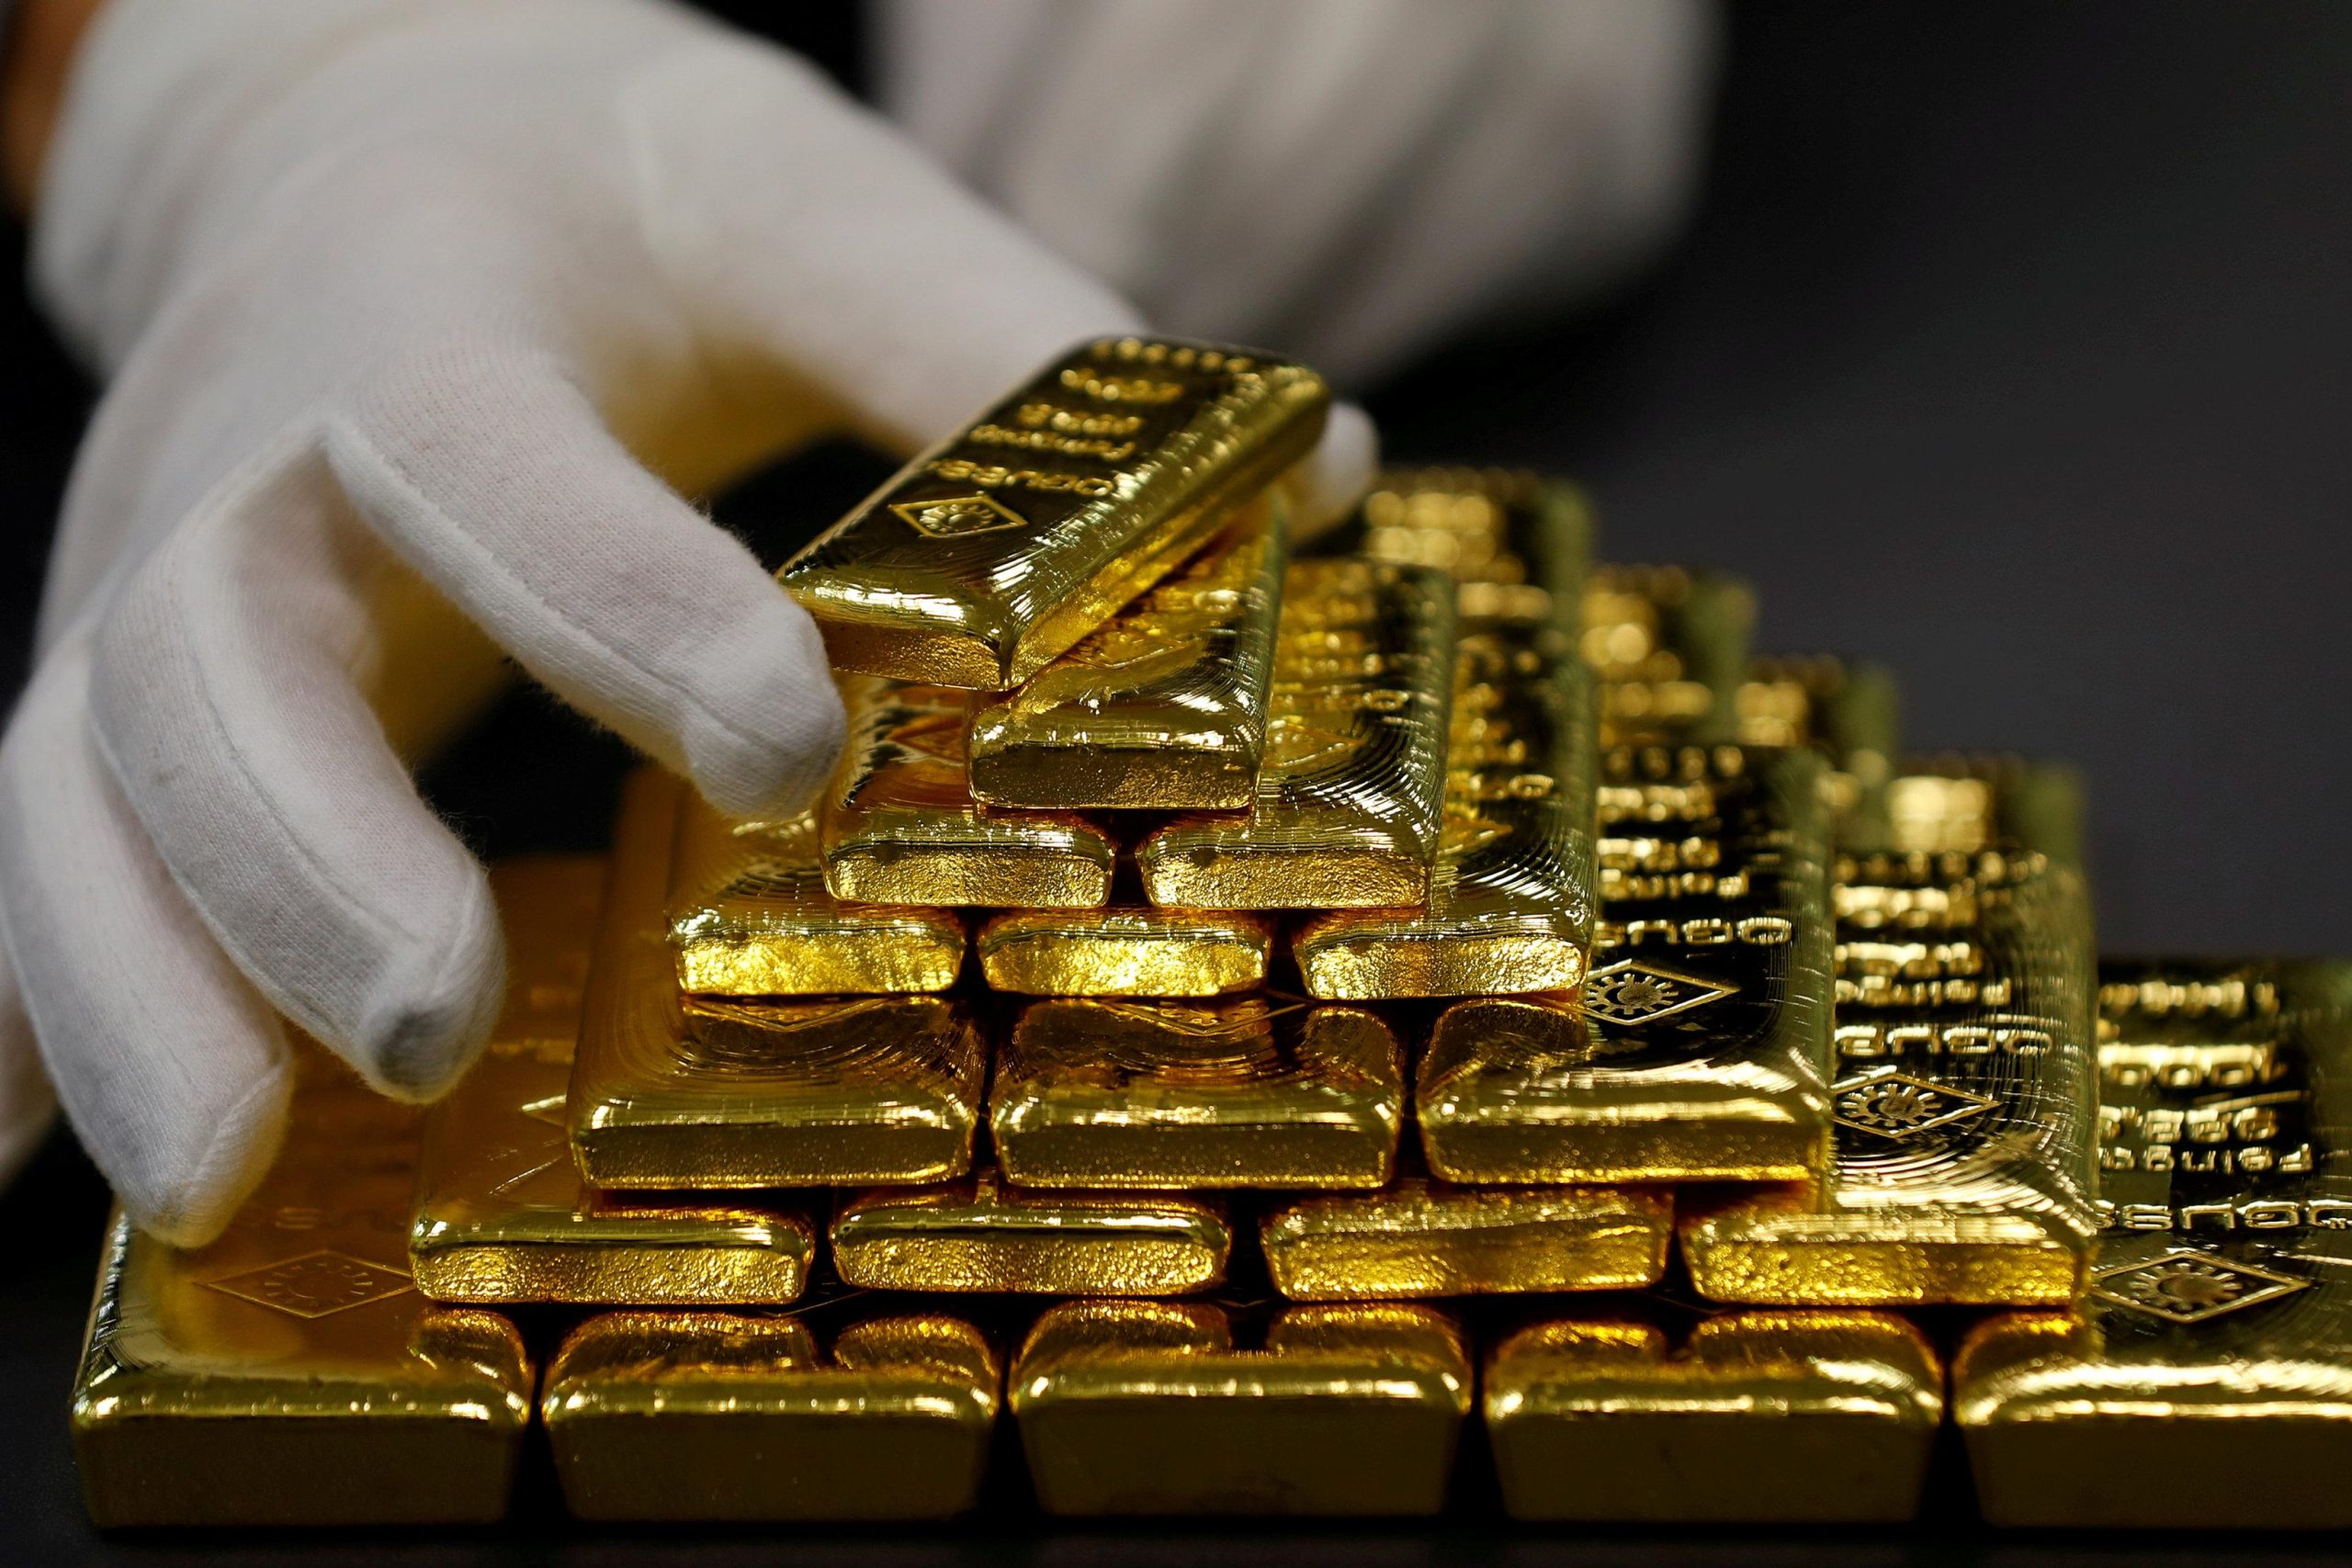 Εσείς γνωρίζετε ποια είναι η αξία των ράβδων χρυσού;